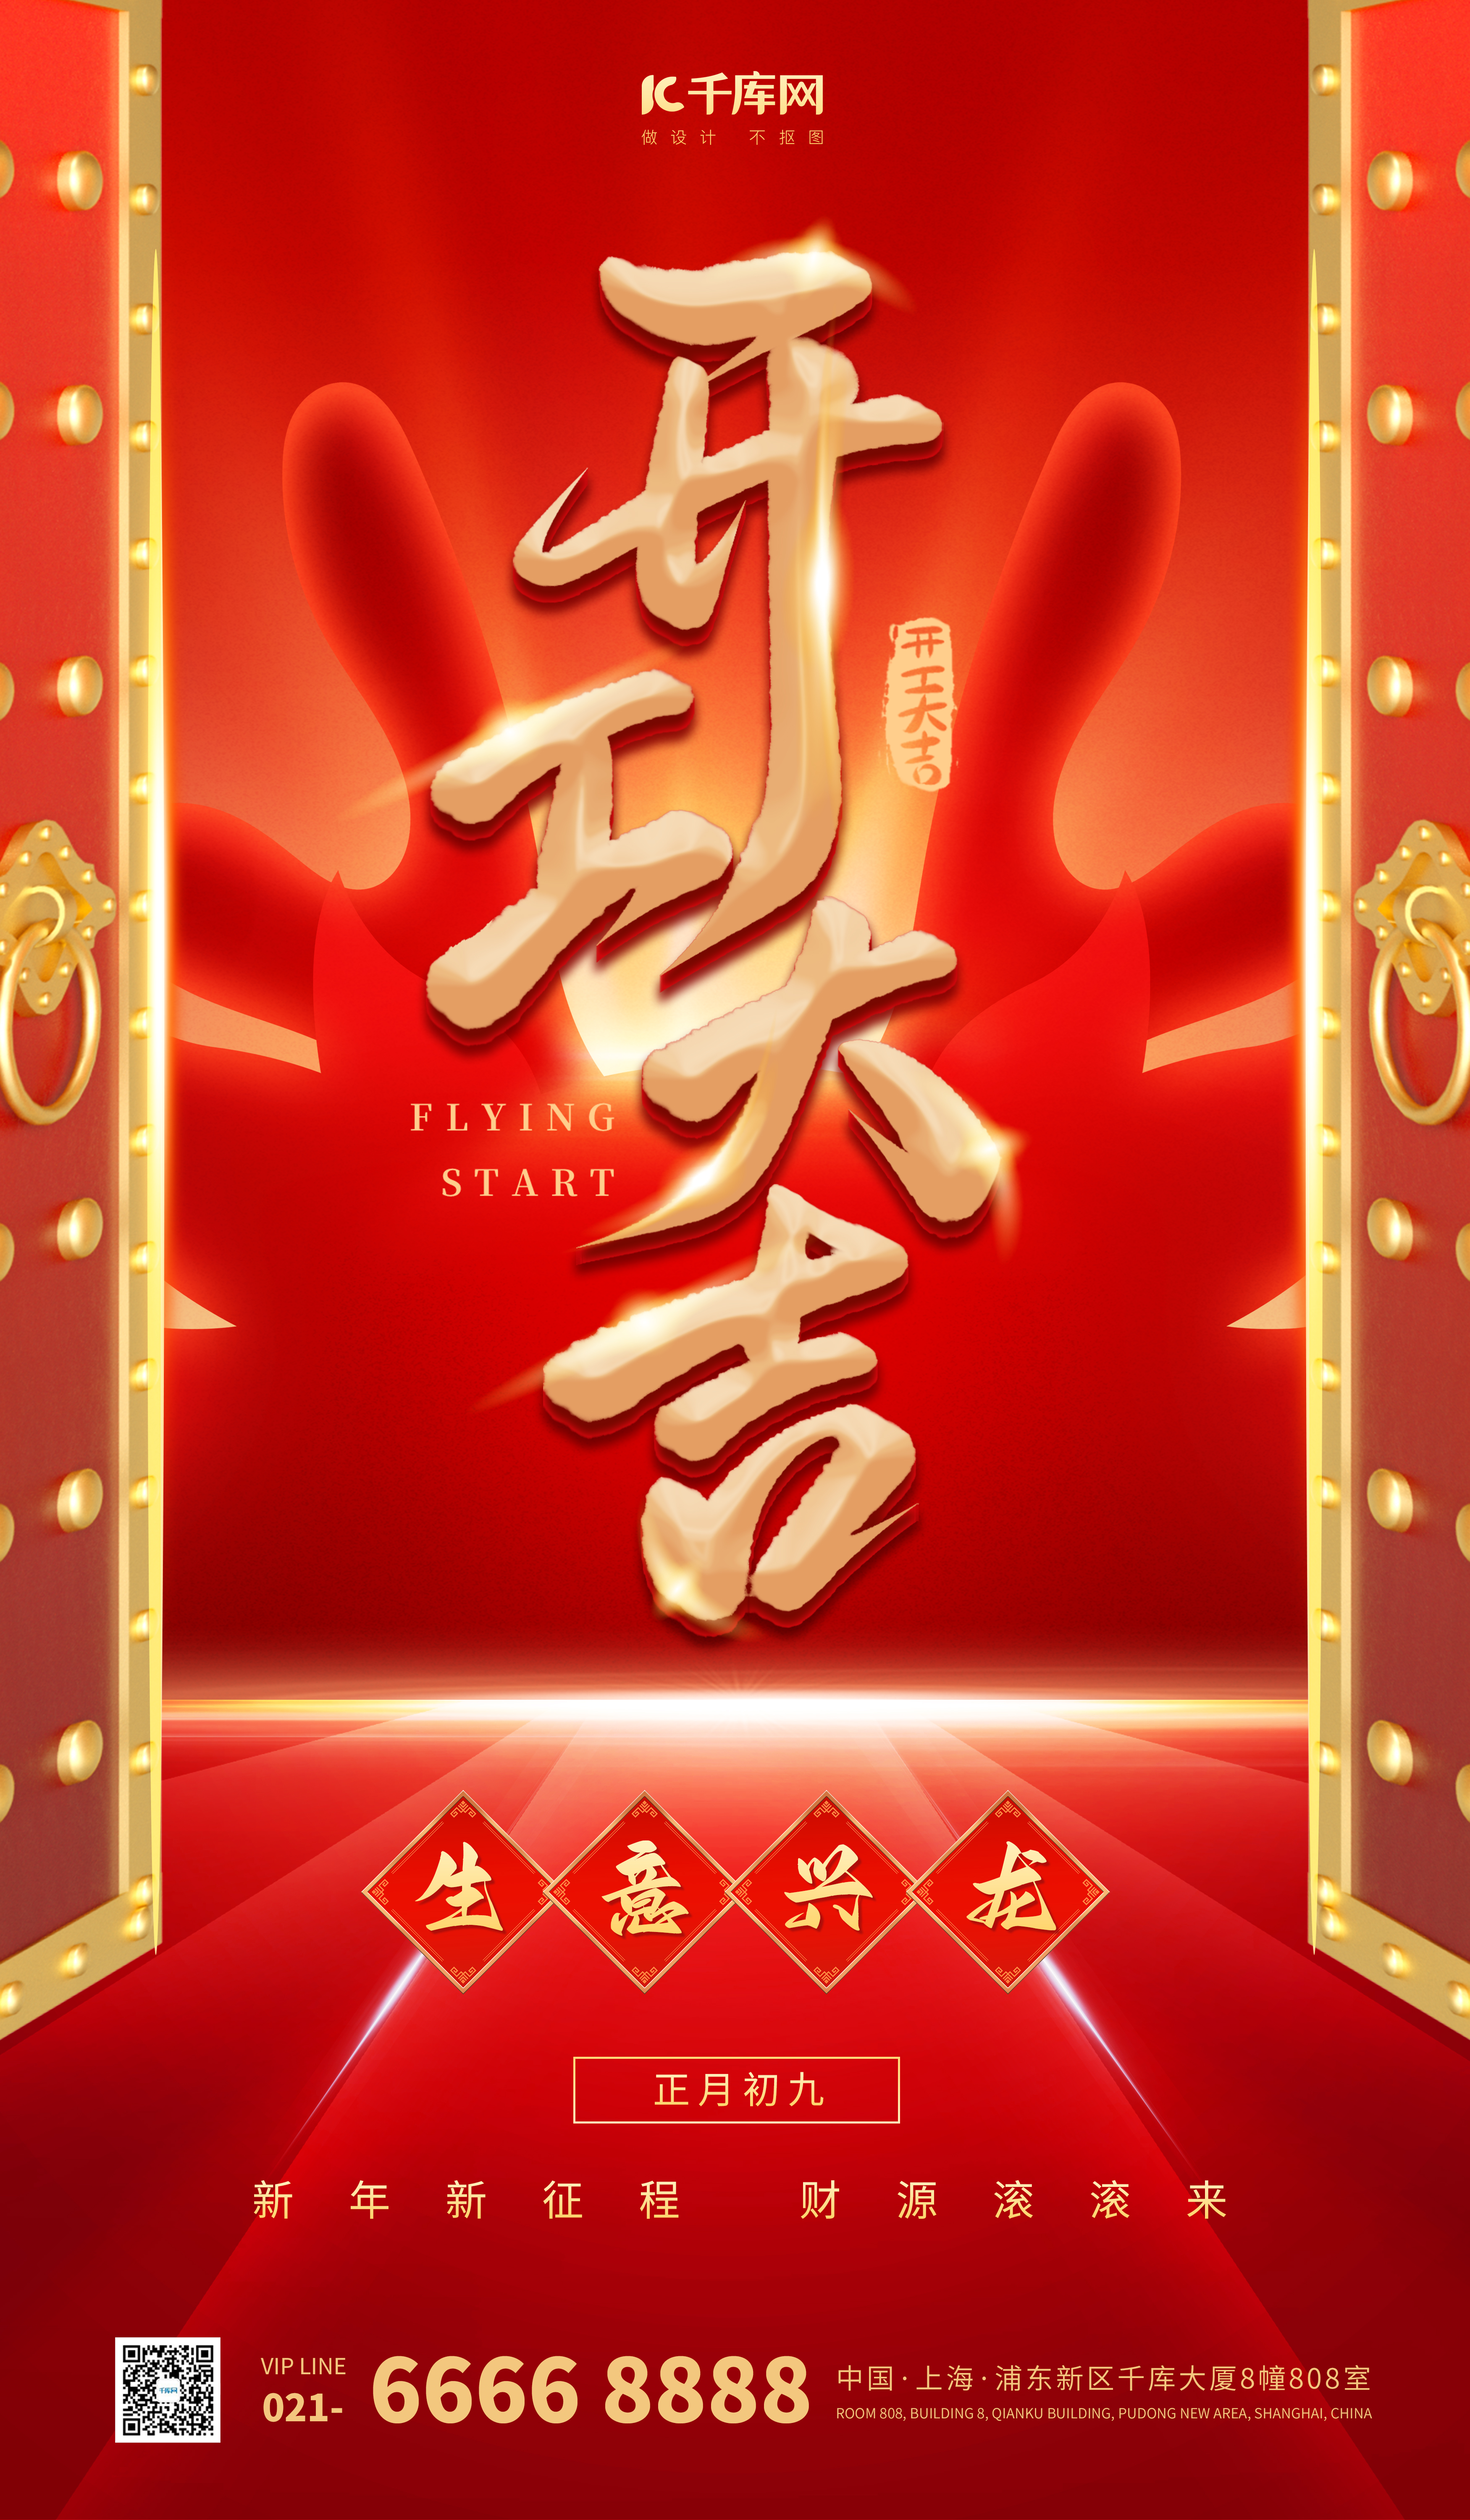 开工大吉龙年红色中国风海报广告宣传海报设计素材图片